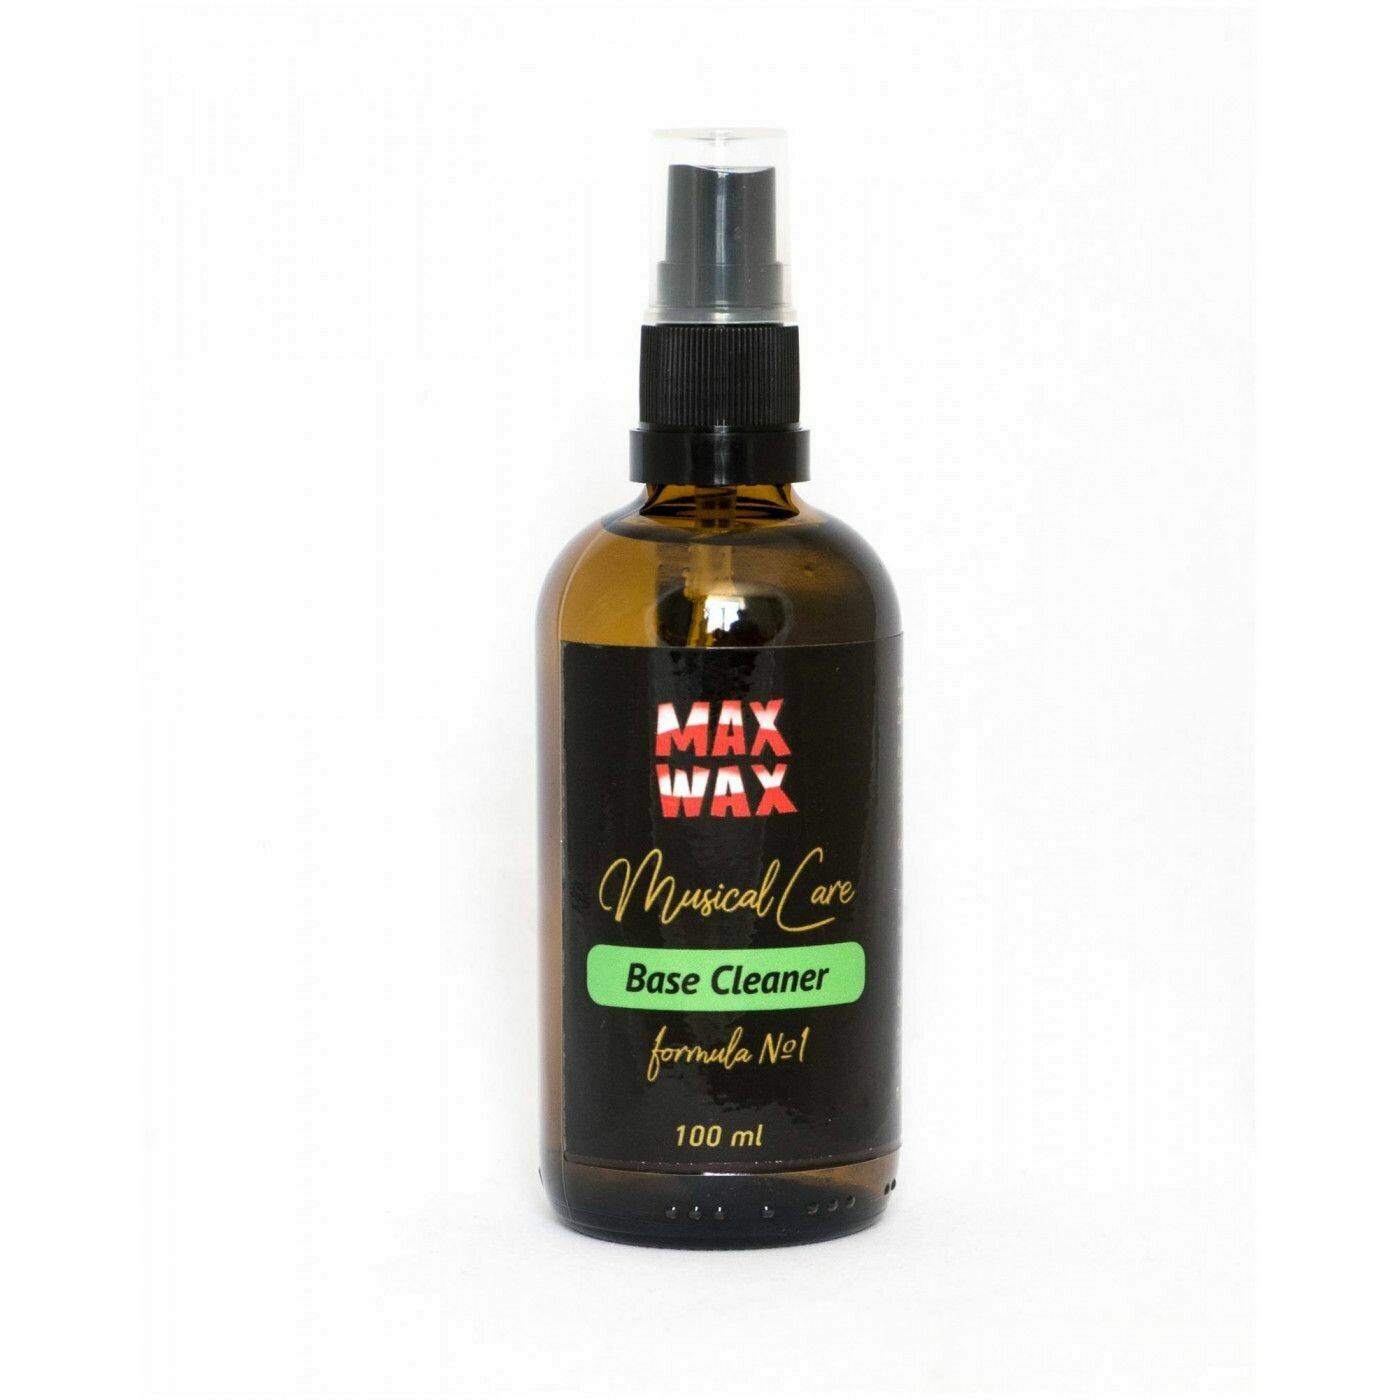 Max Wax Base Cleaner - средство для очистки струн и не покрытых лаком поверхностей.